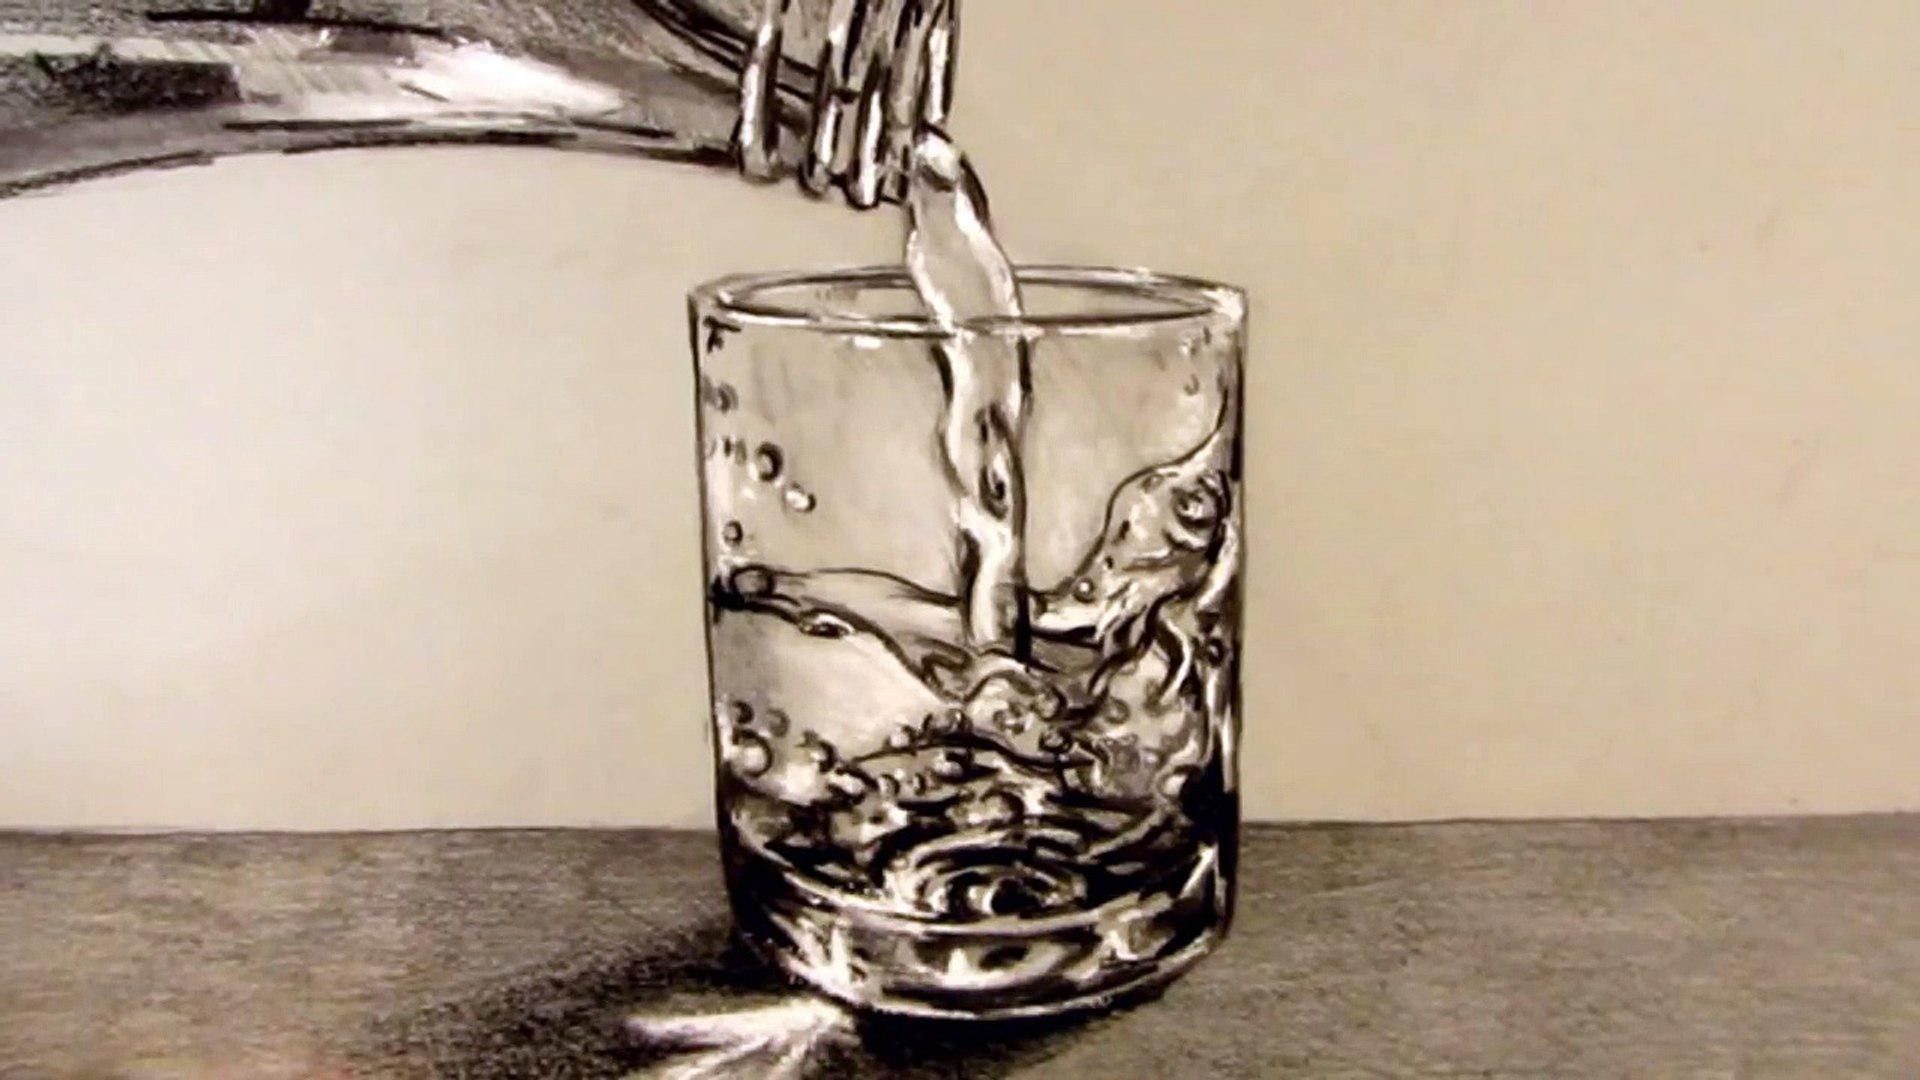 Comment dessiner un verre d'eau avec de l'eau qui s'y déverse